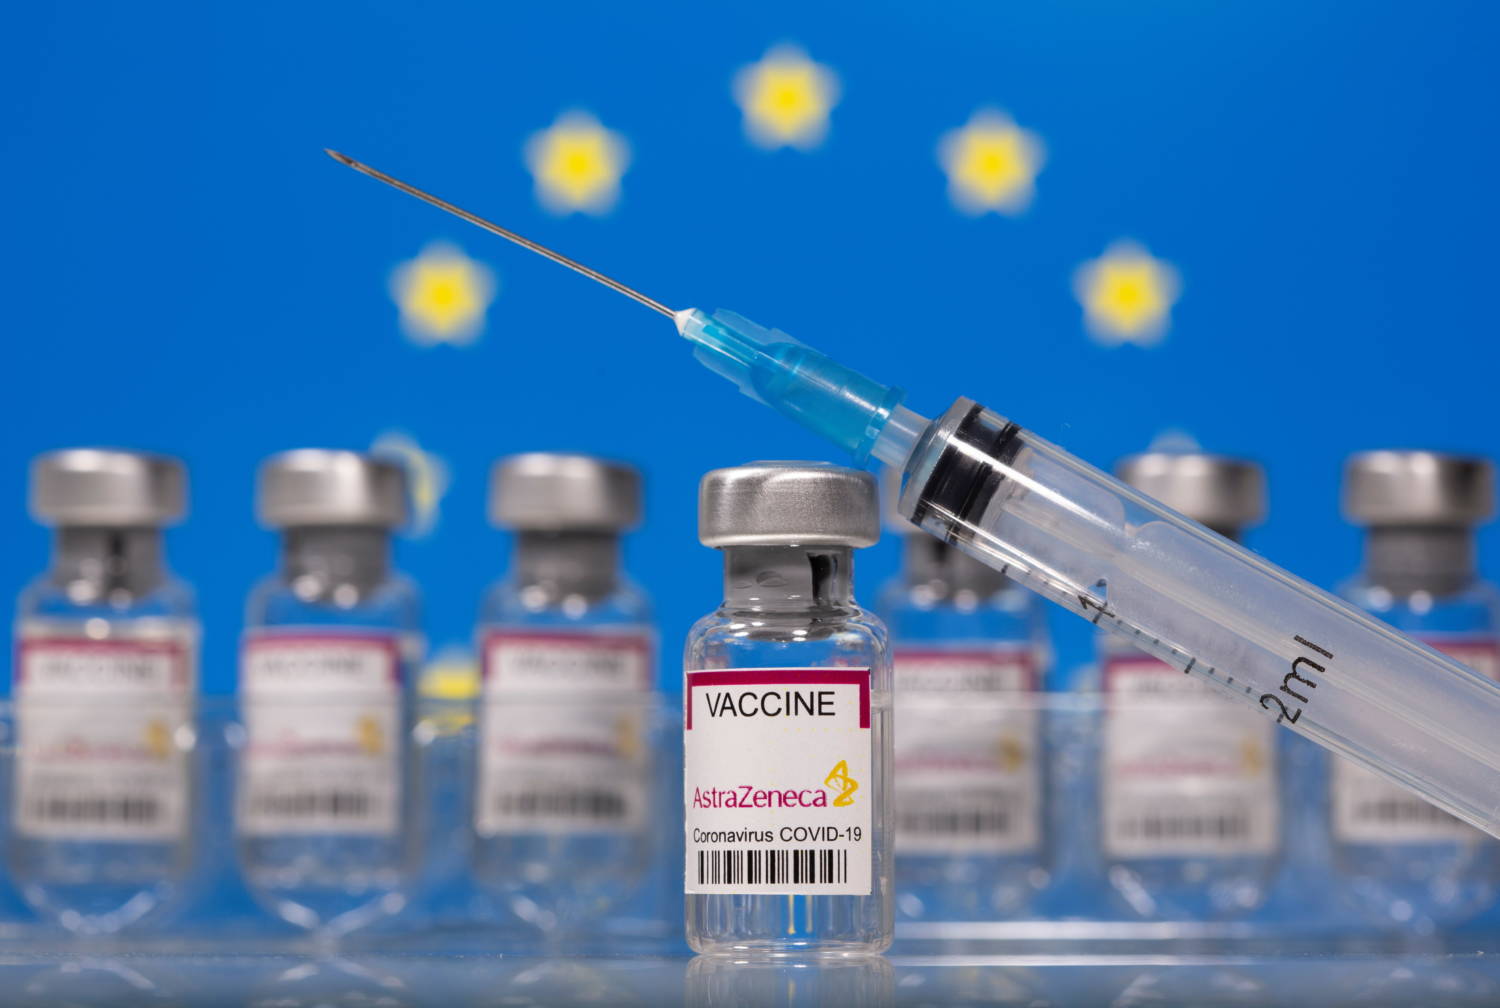 Υπουργείο Υγείας: 161.526 εμβολιασμοί COVID-19 πραγματοποιήθηκαν έως τις 3 Απριλίου